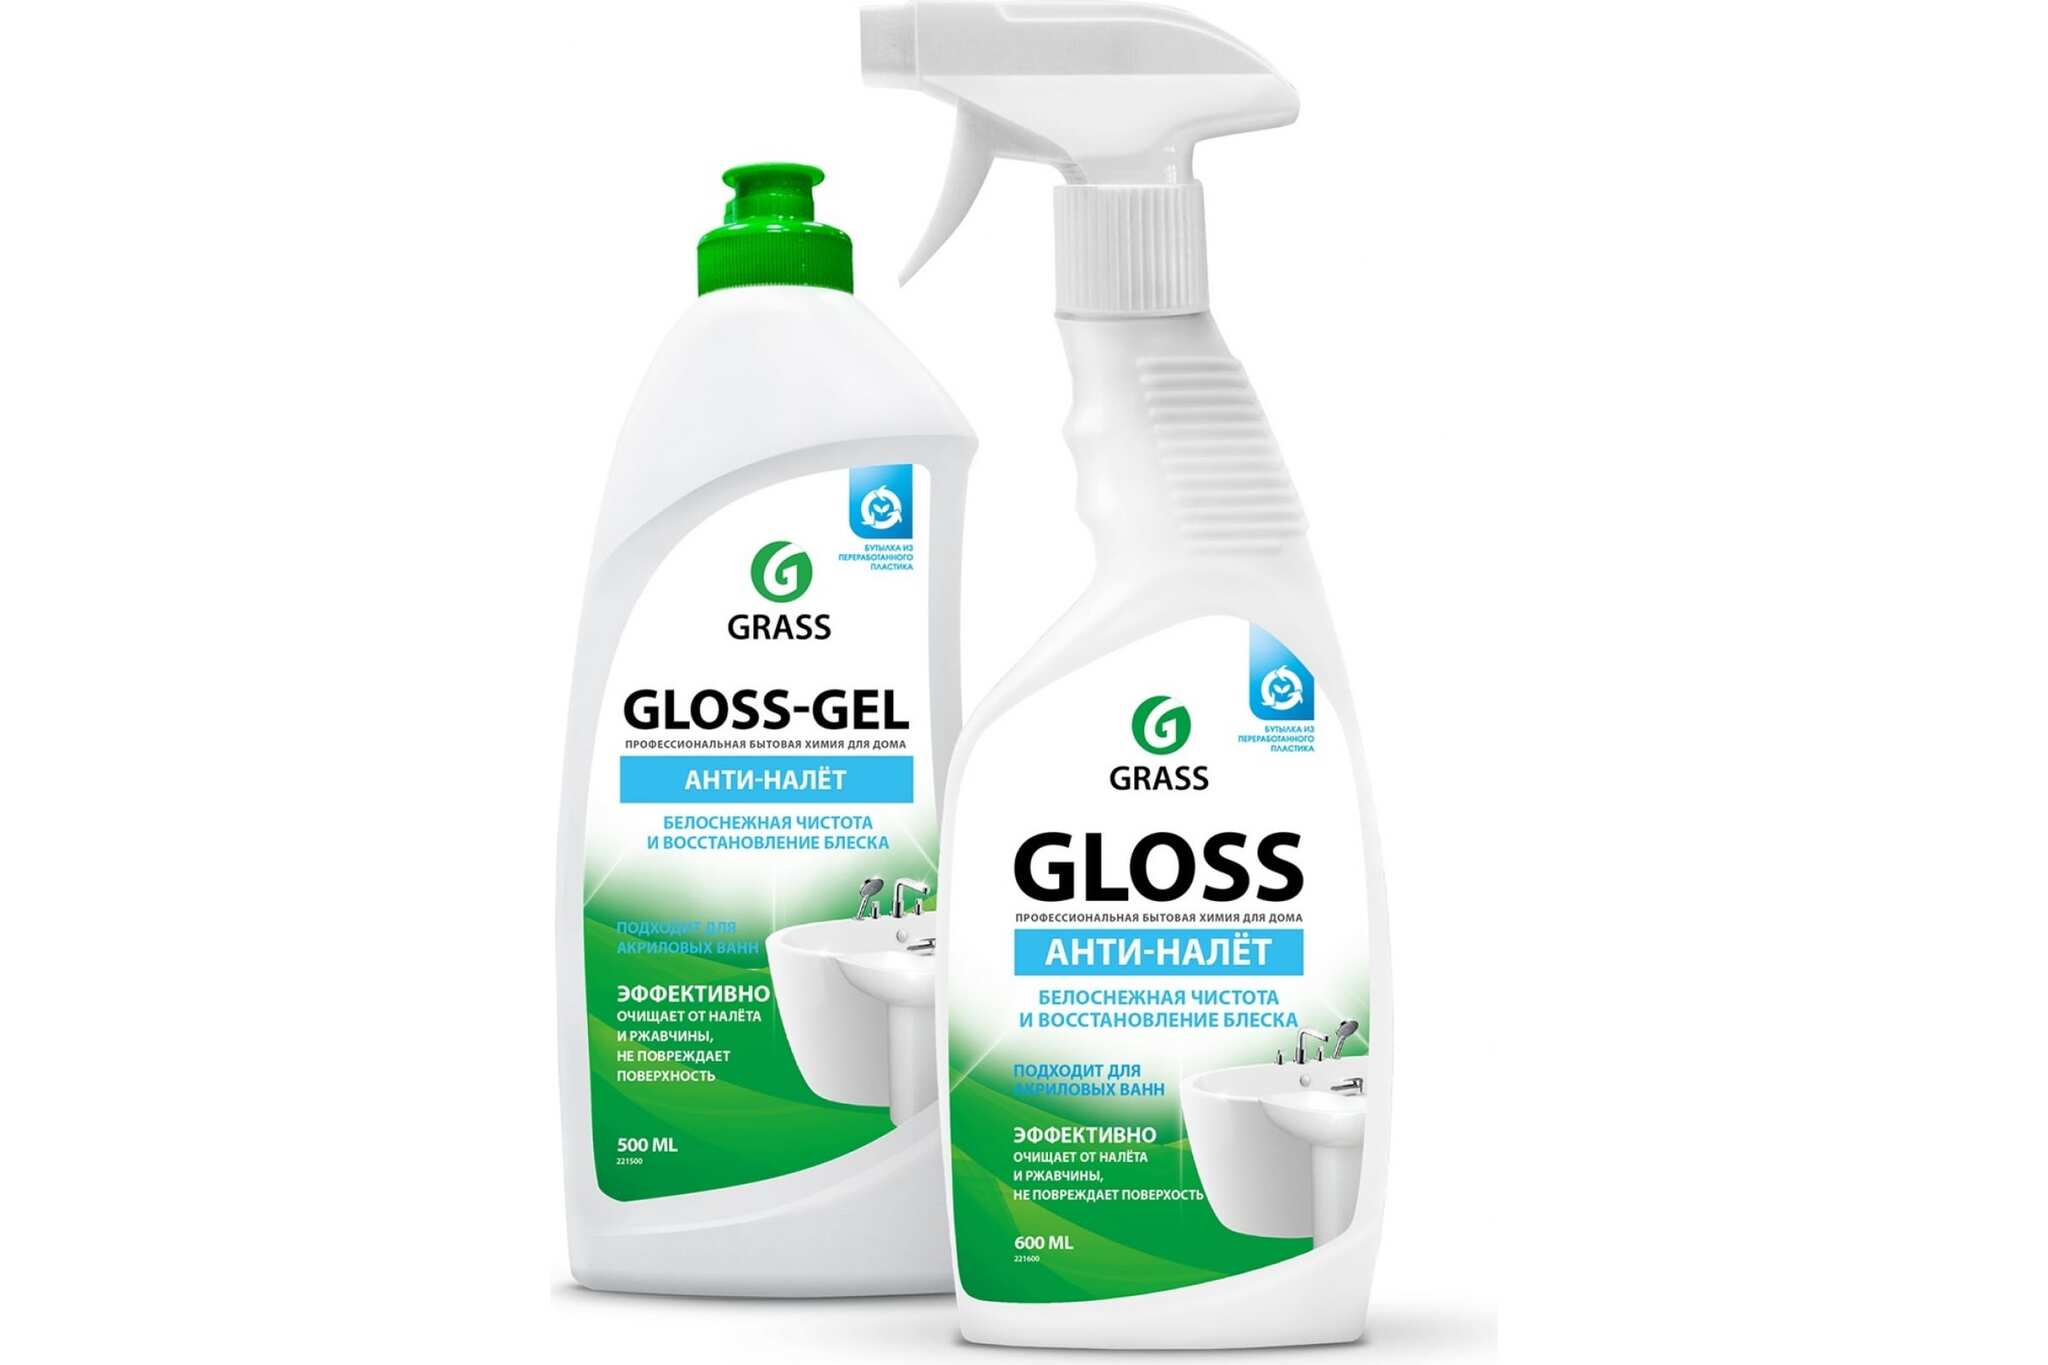 Гель для акриловых ванн. Грасс бытовая химия для ванной акриловой. Грасс Глосс для сантехники. Очиститель многоцелевой 500мл - Gloss-Gel: grass 221500. Средство grass Gloss 600мл для ванной.